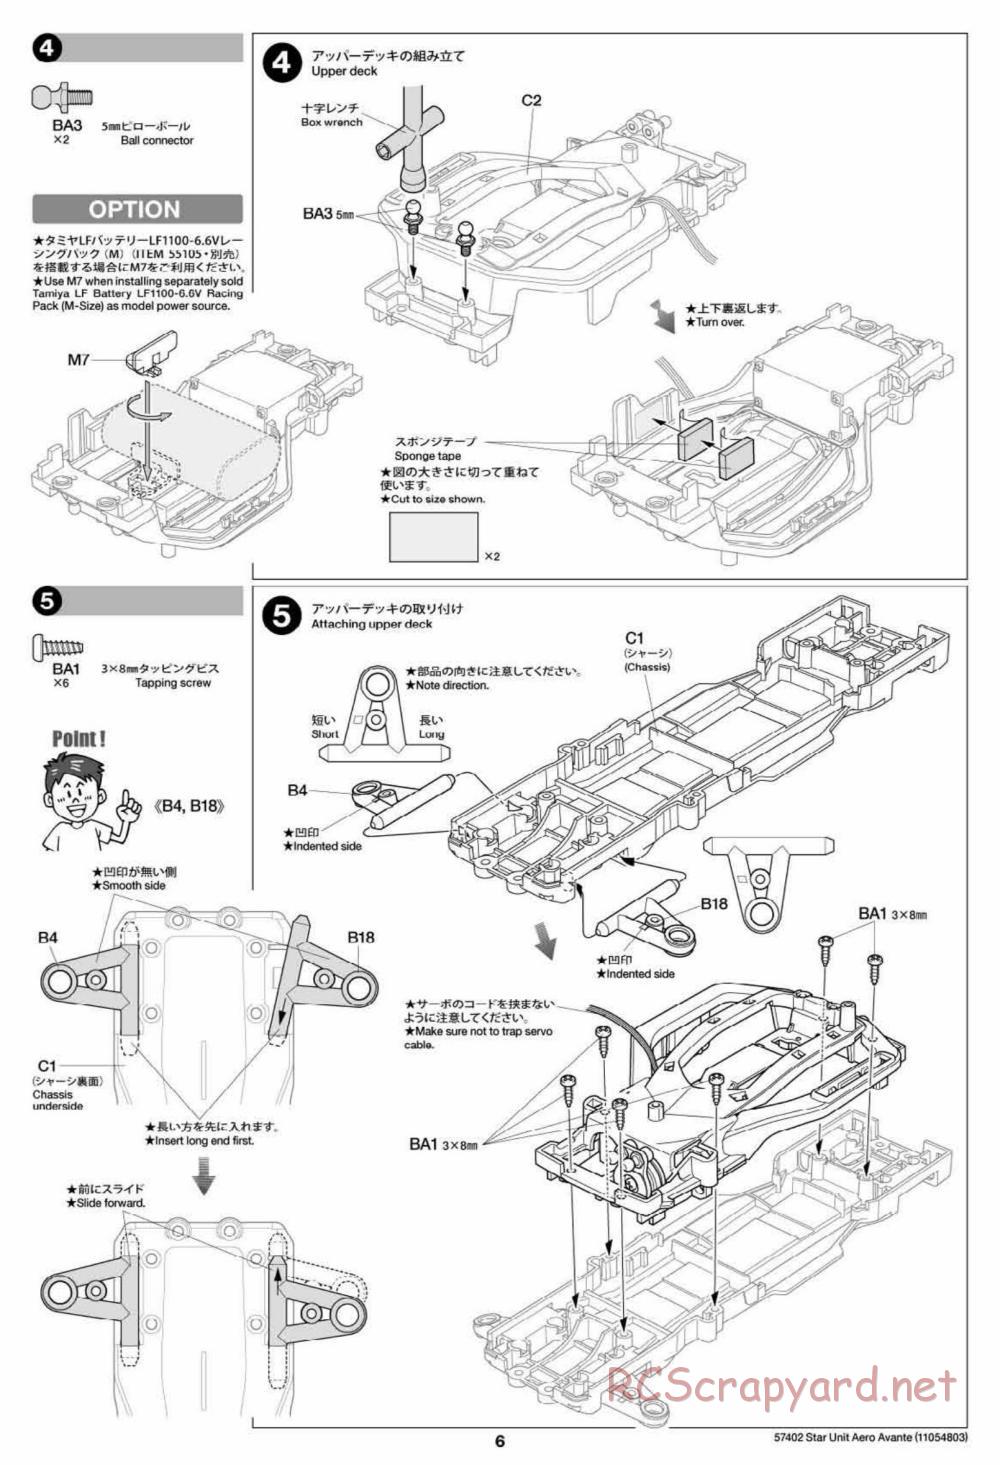 Tamiya - Aero Avante Chassis - Manual - Page 6